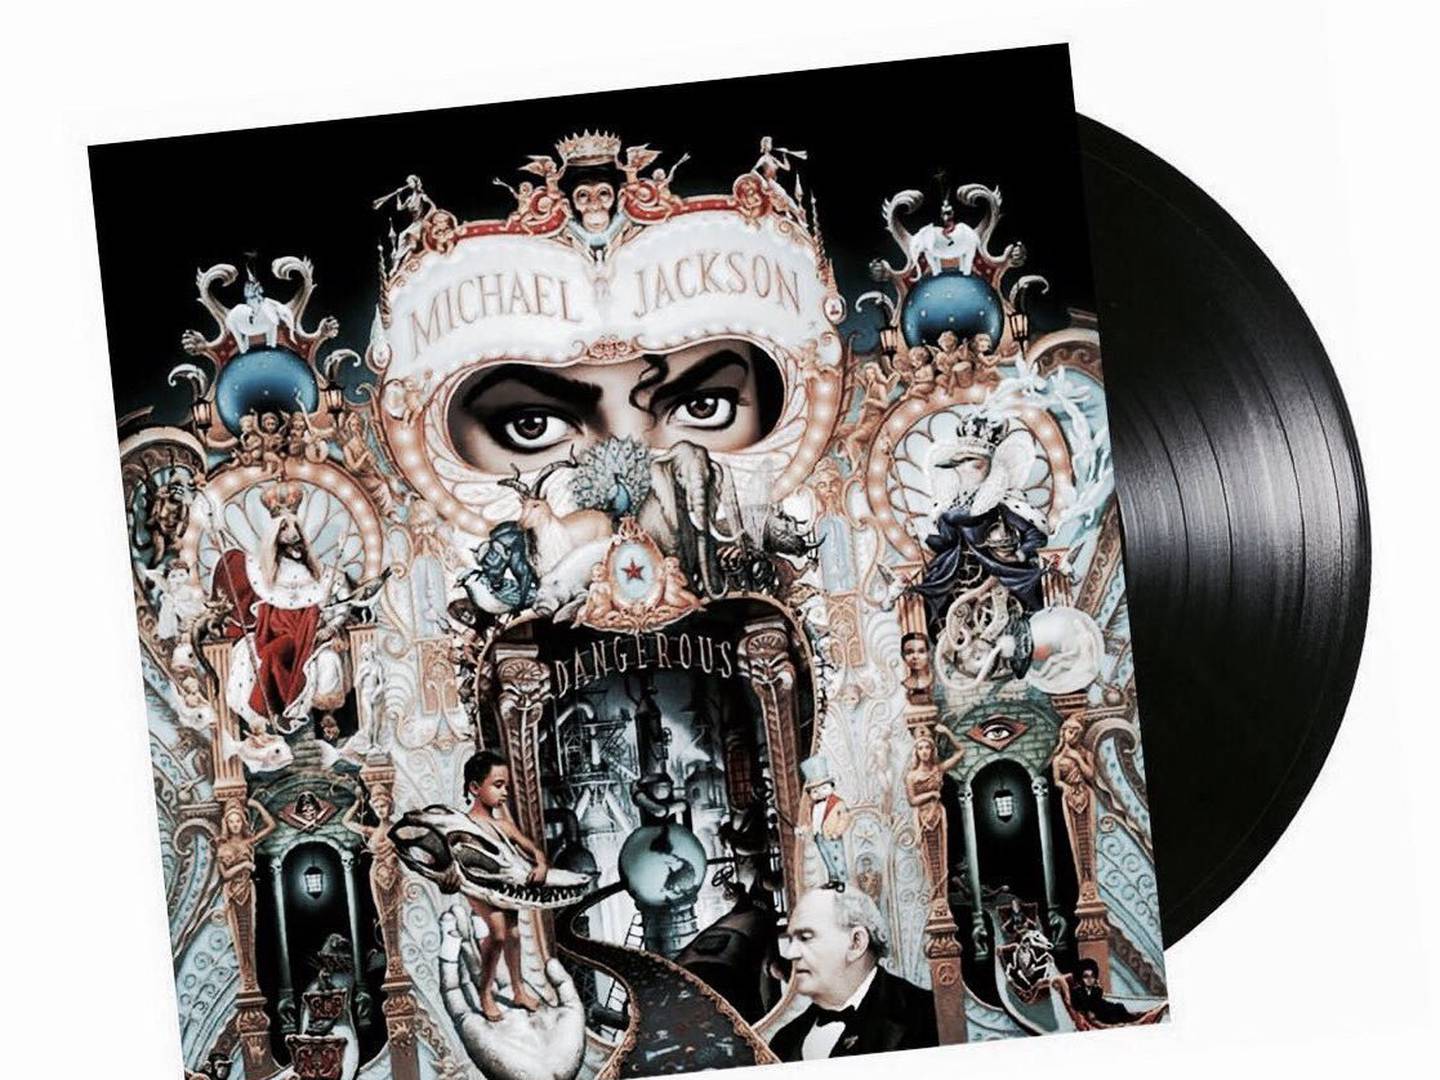 Los enigmas de la portada del disco 'Dangerous' de Michael Jackson –  Publimetro México